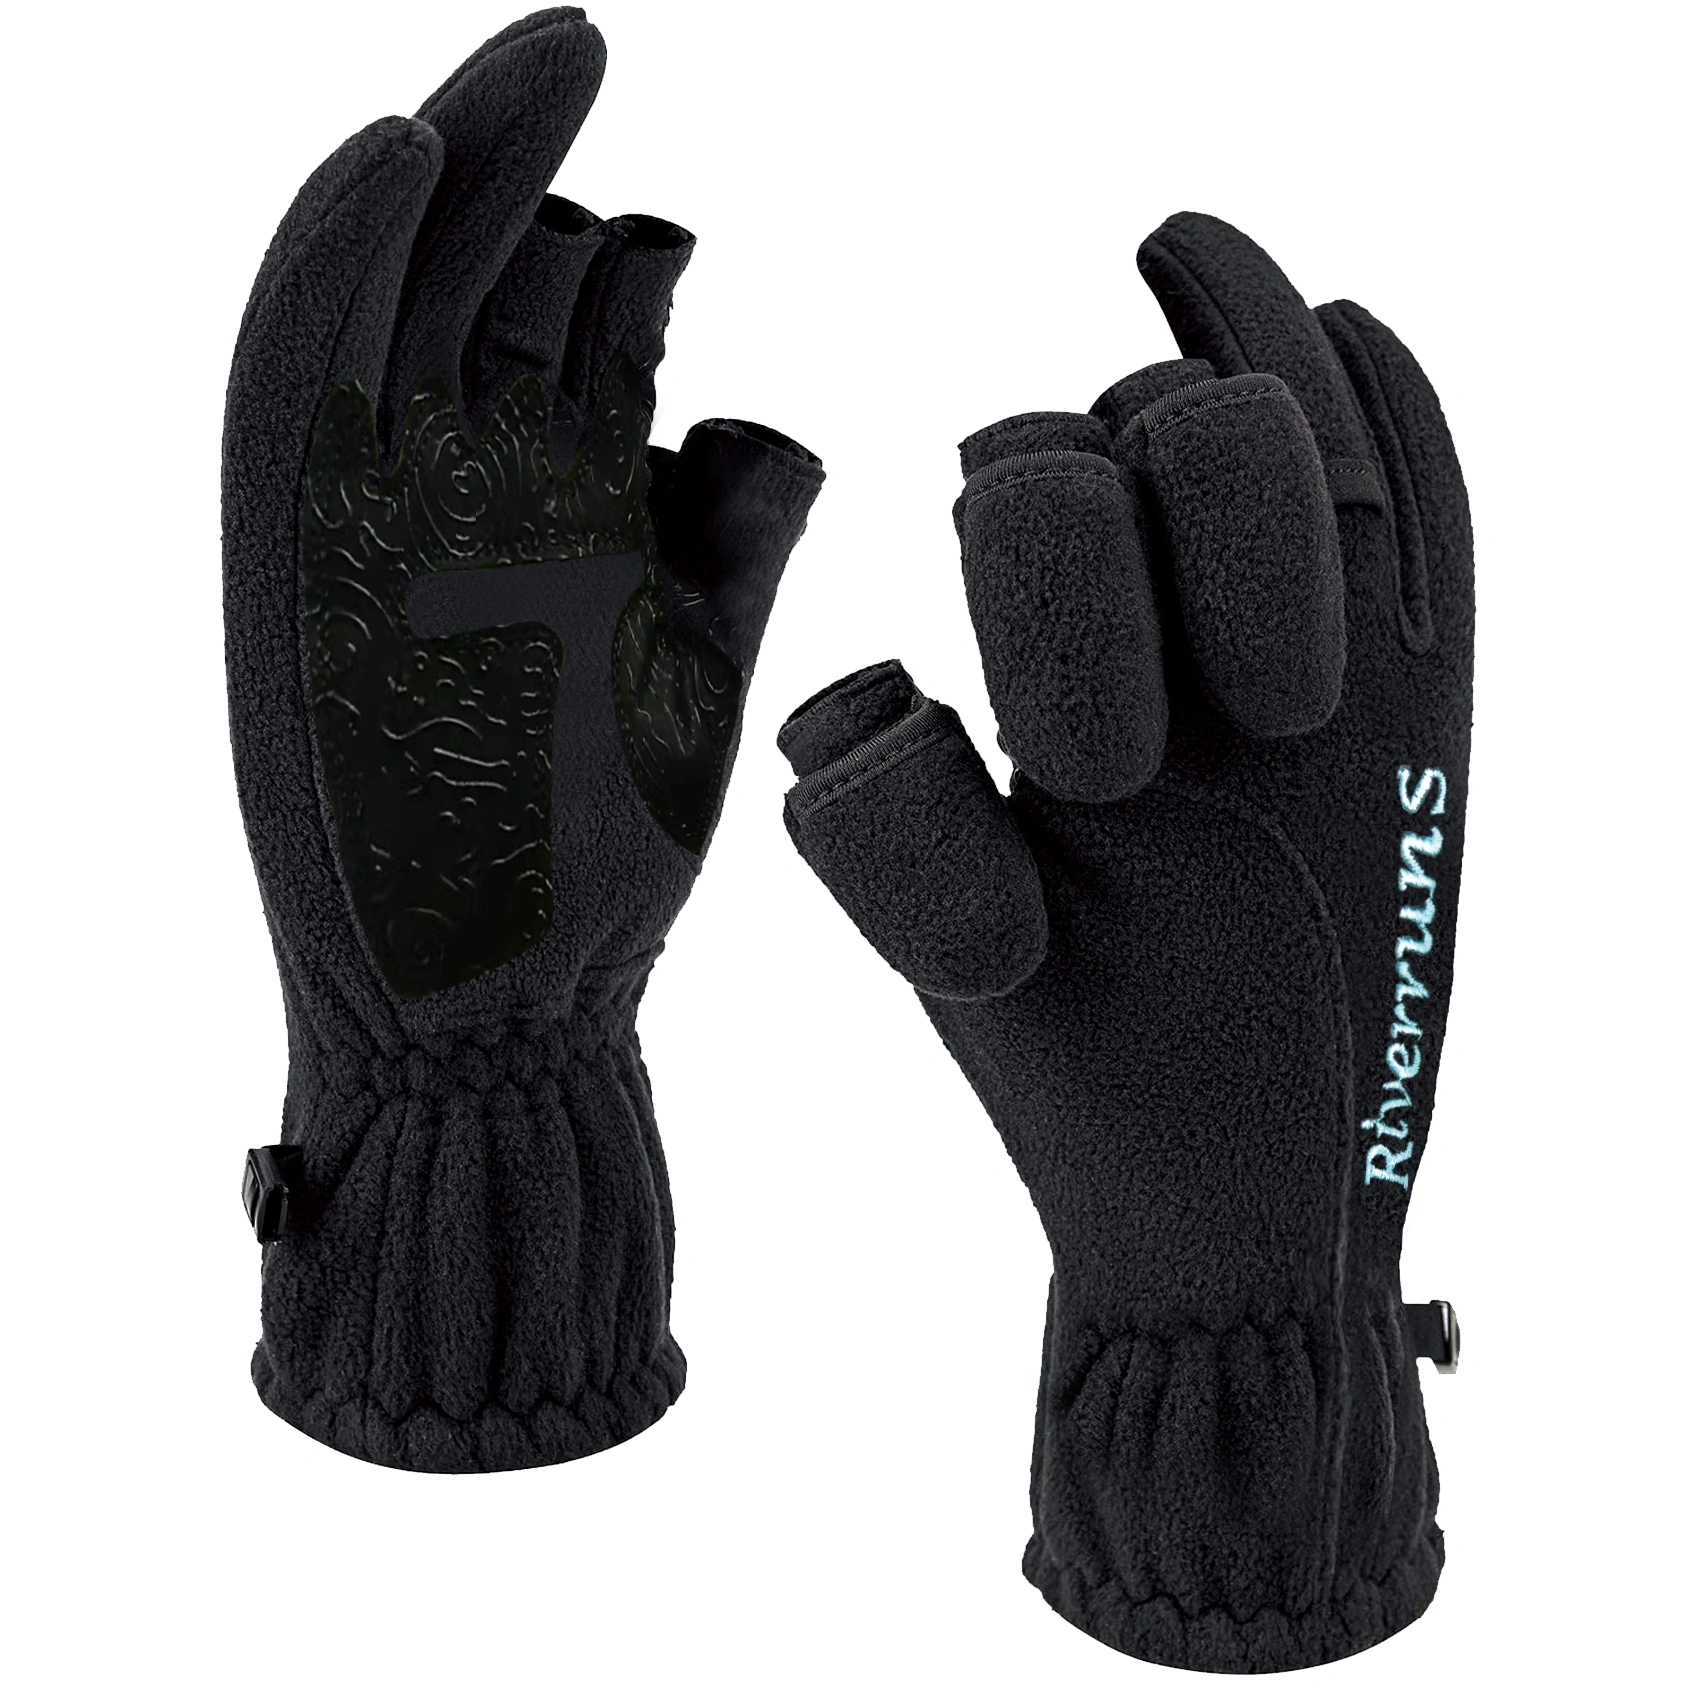 GLACIER Hybrid Angler Fleece Lined Neoprene Fishing Gloves